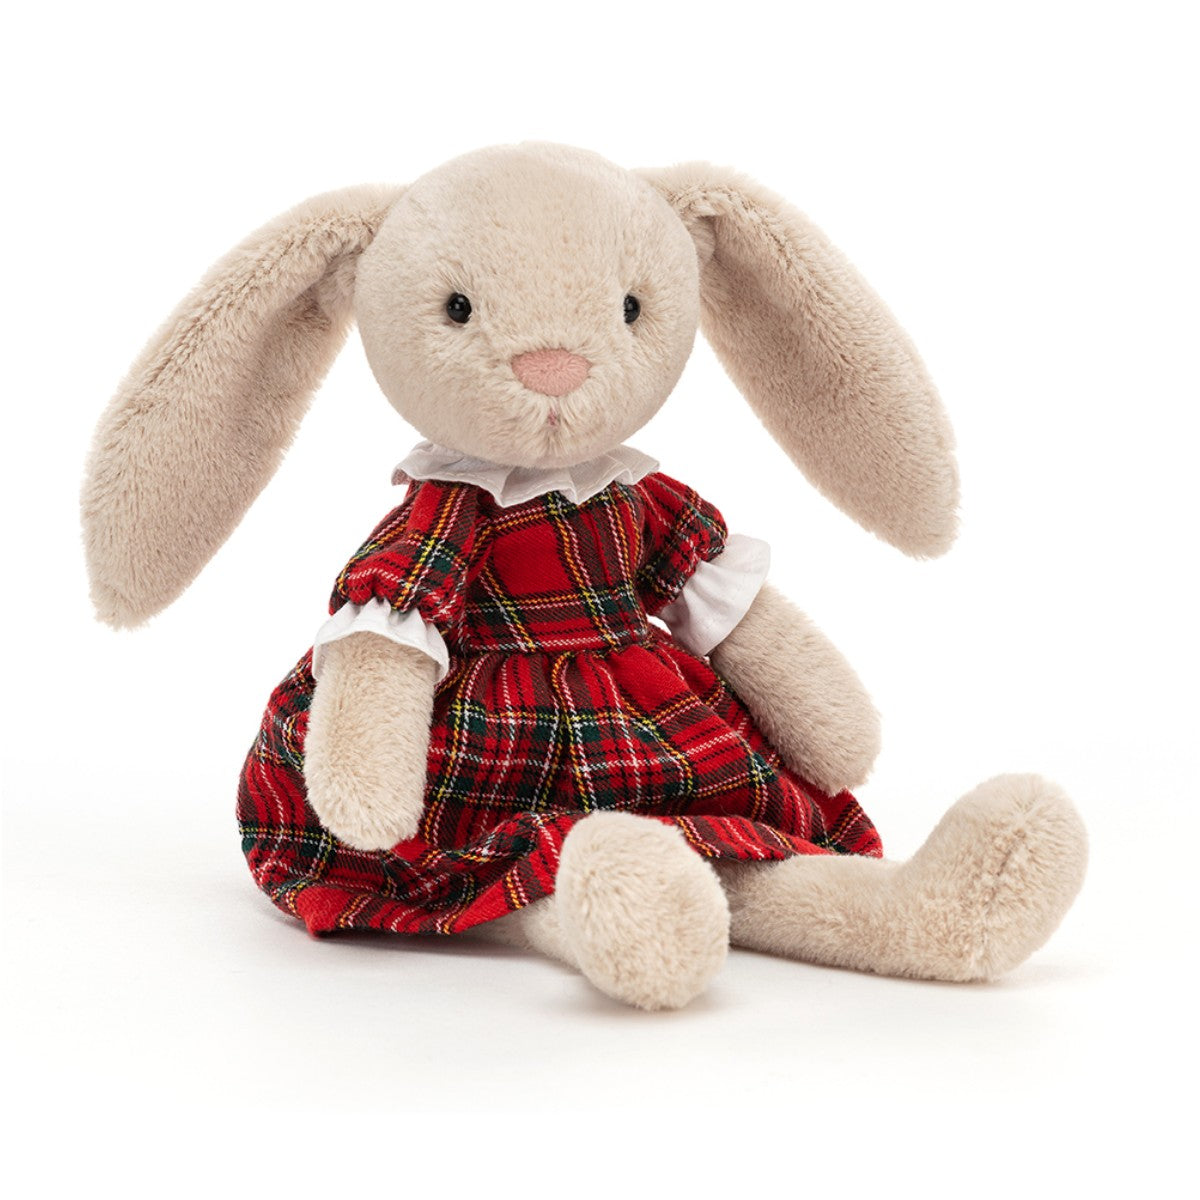 Jellycat, Lottie kanin med skotsternet kjole, 17 cm